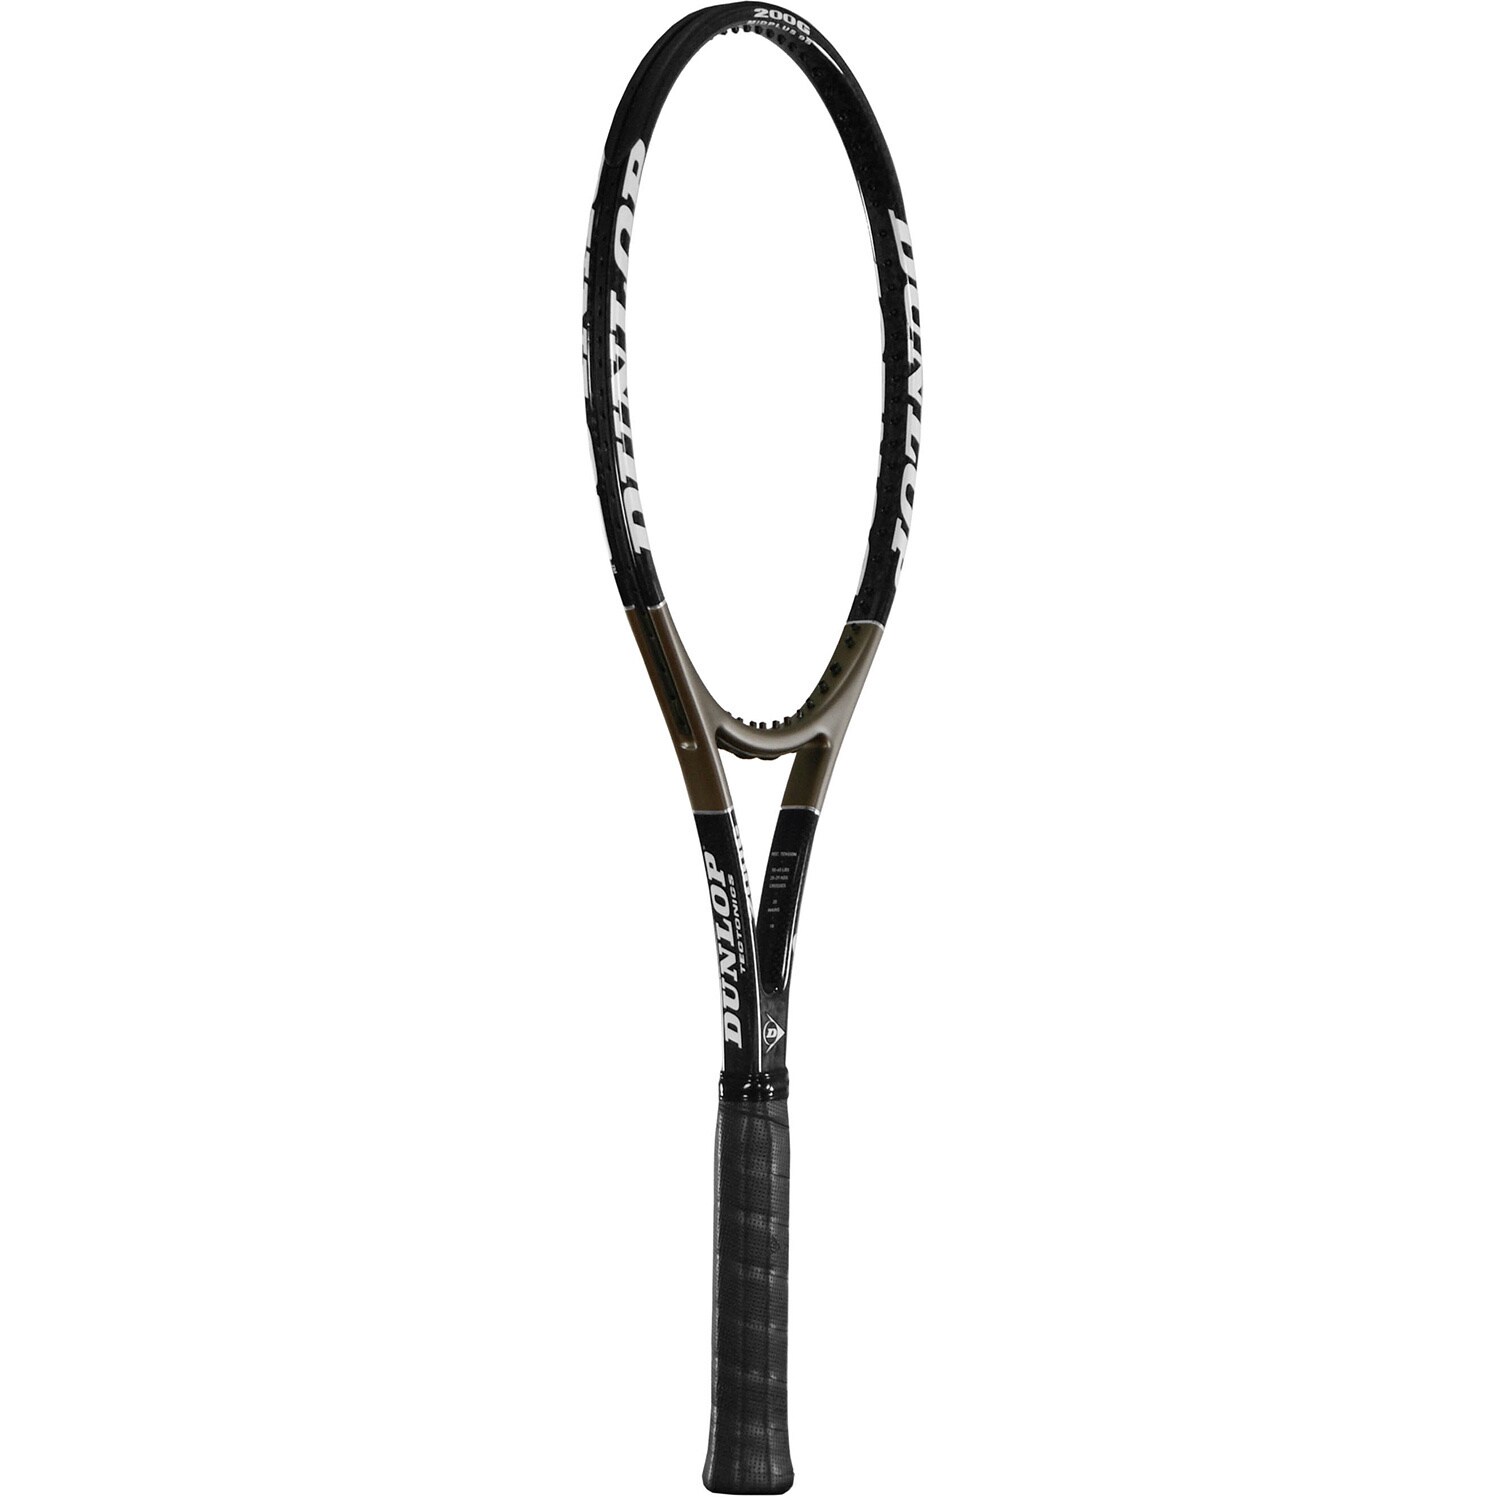 Dunlop Muscle Weave 200g Tennis Racquet